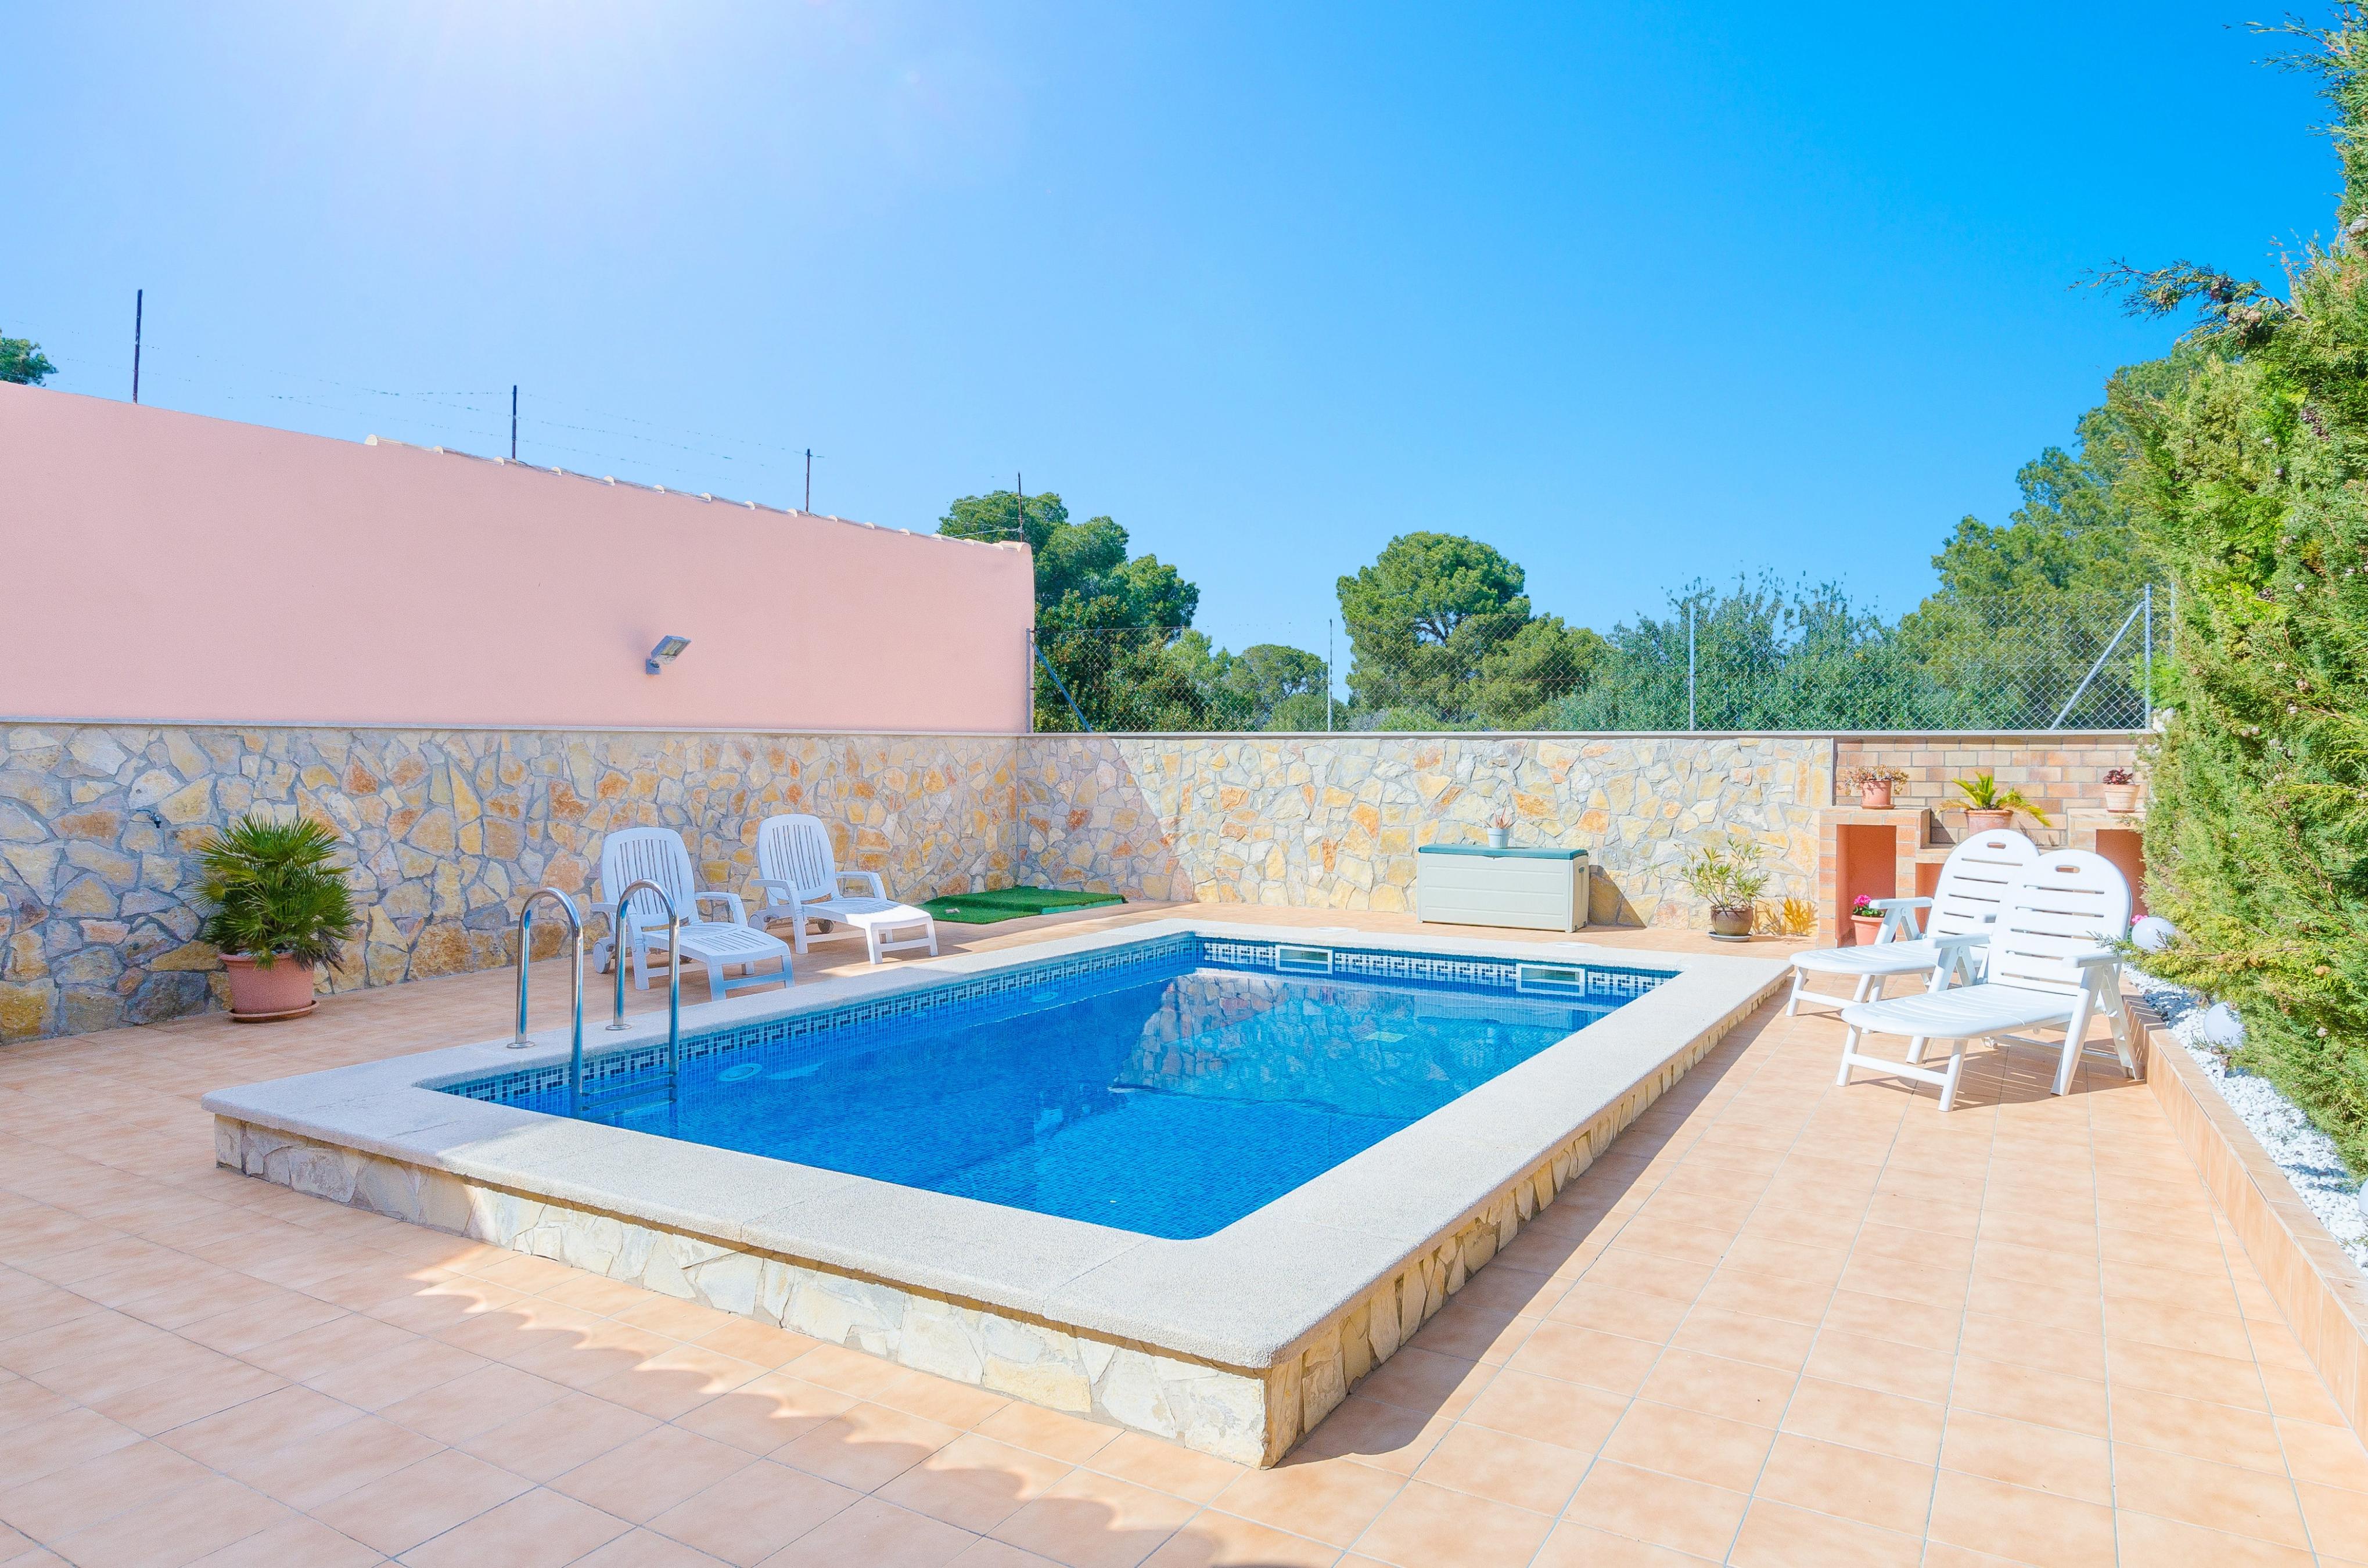 Property Image 2 - VILLA GLORIA - Villa with private pool in Cala Pi - Llucmajor. Free WiFi